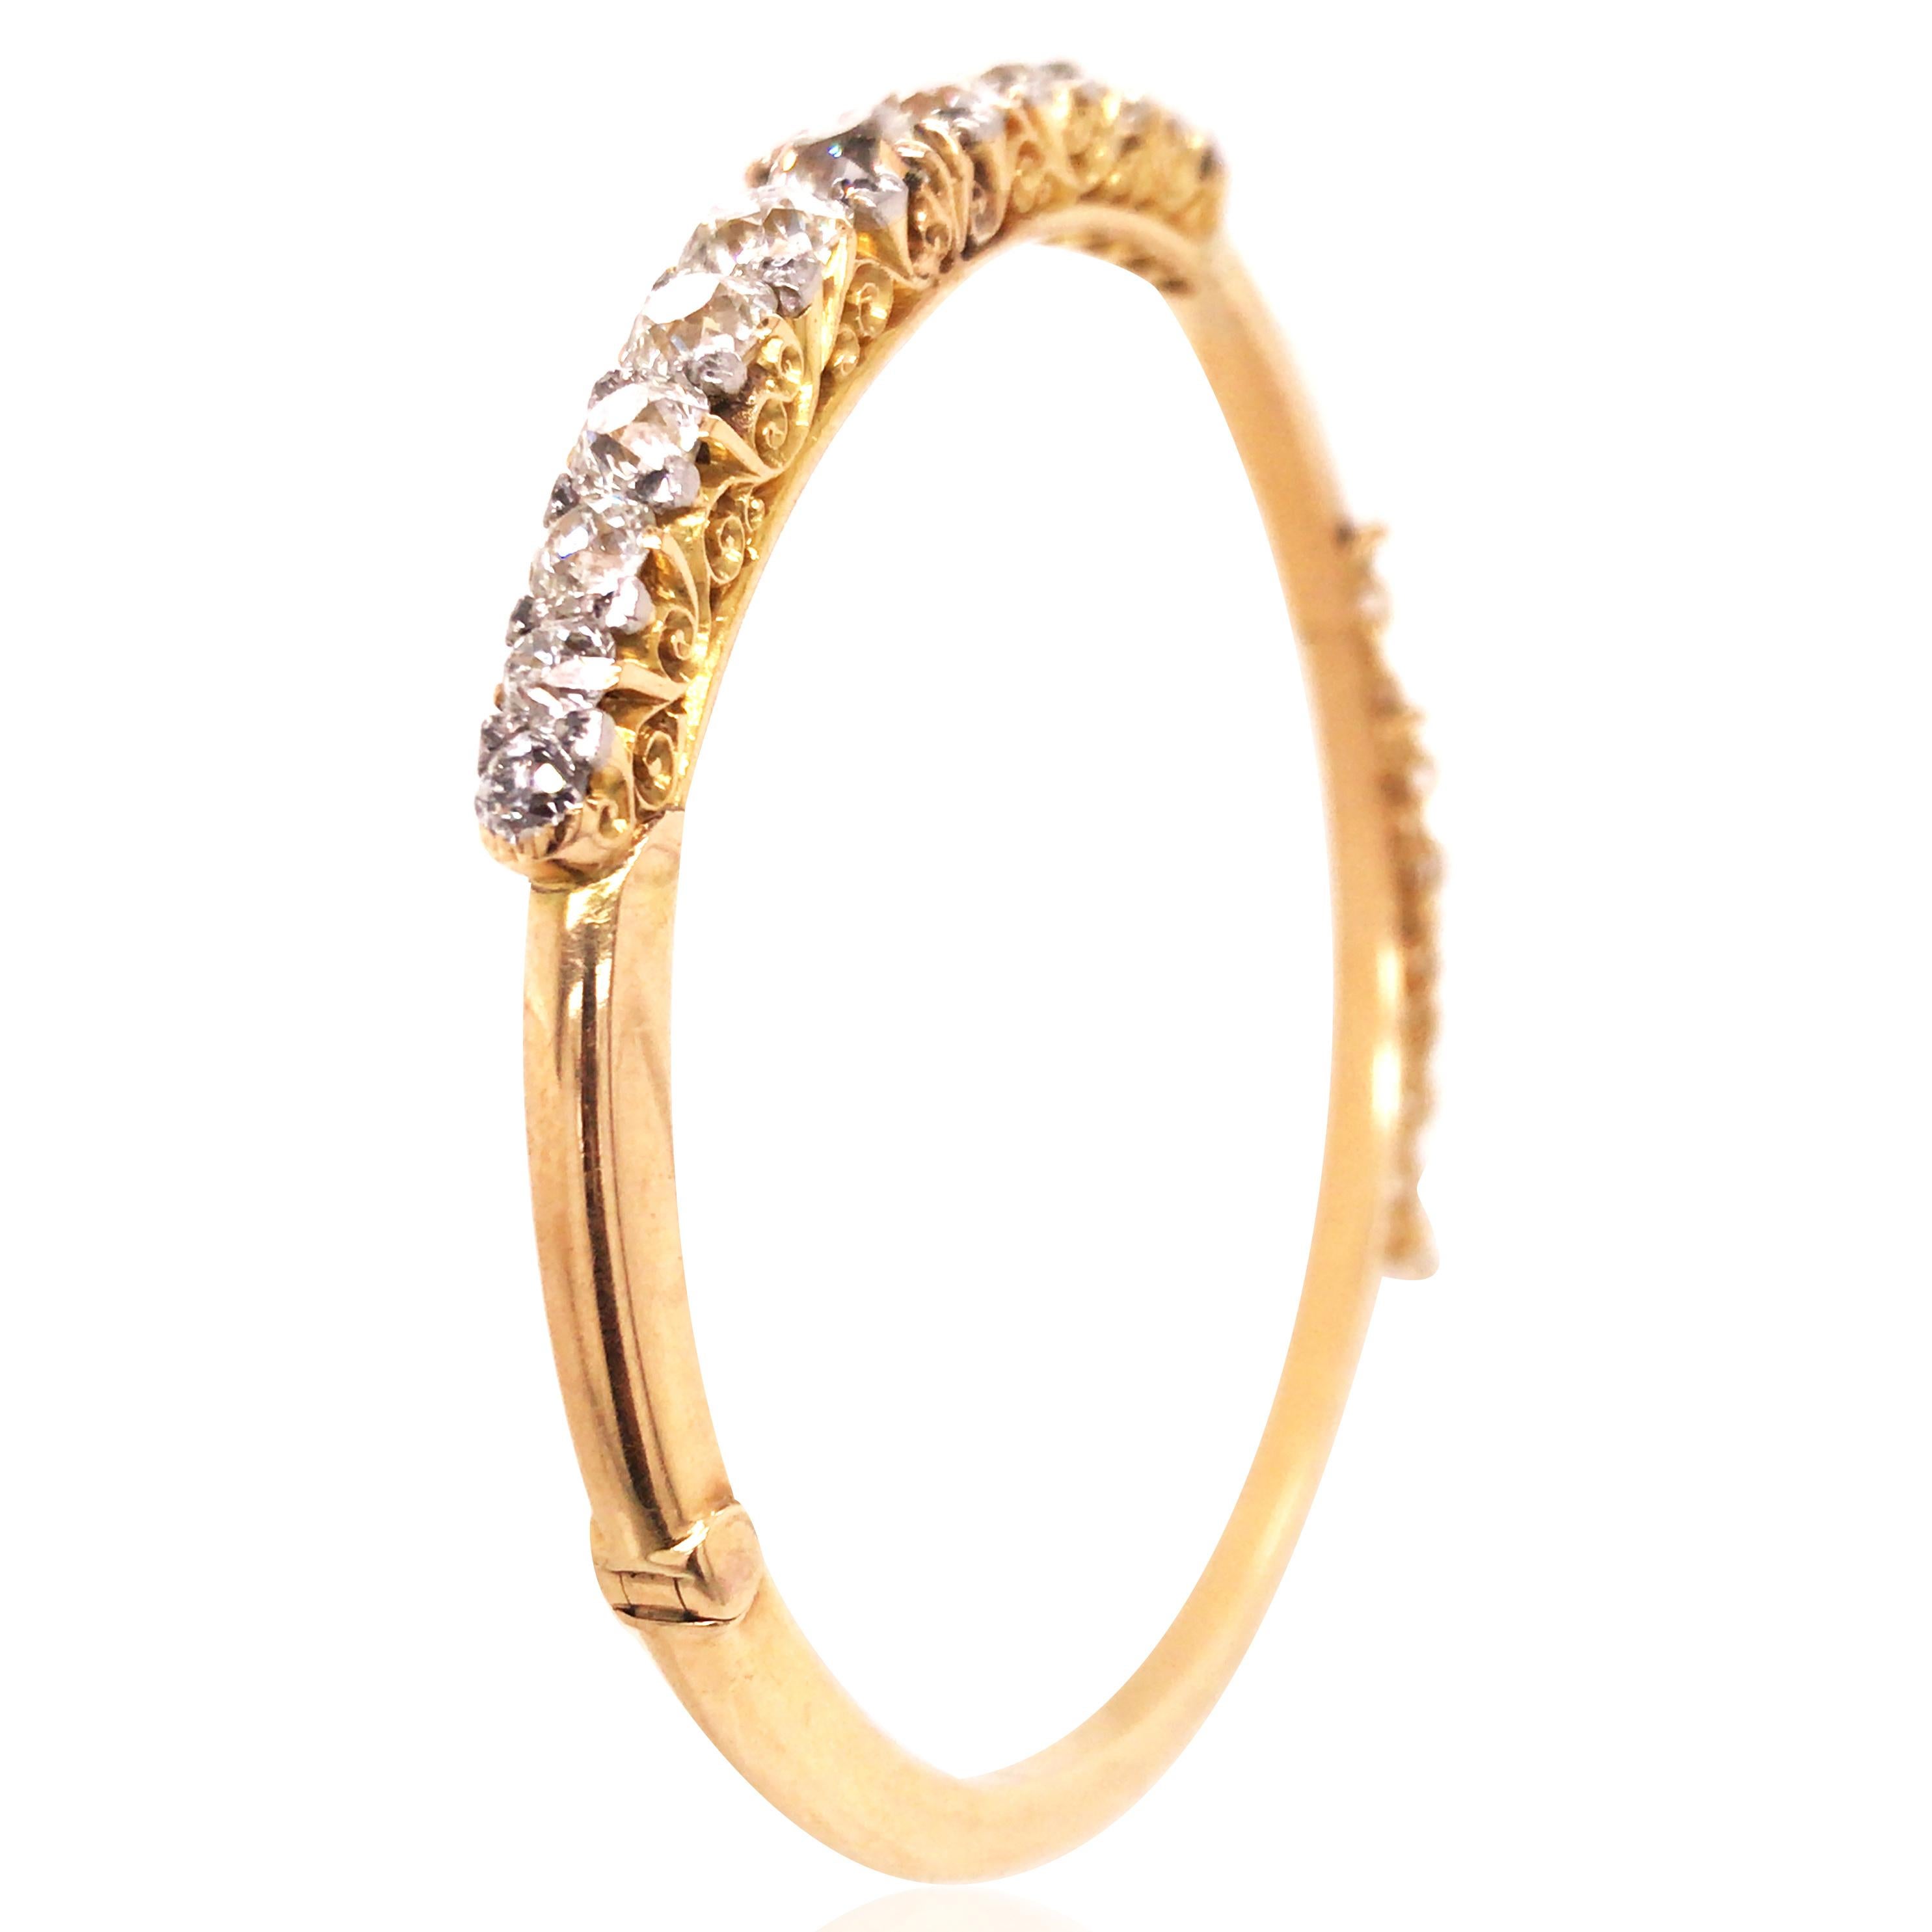 Ce bracelet en diamants est fabriqué en or 18 carats. Il y a 13 diamants taille ronde pour un total d'environ 5,26ct.

Diamant : 5,26ct
Poids :  15,0 grammes
Mesure : 20,3 cm de périmètre